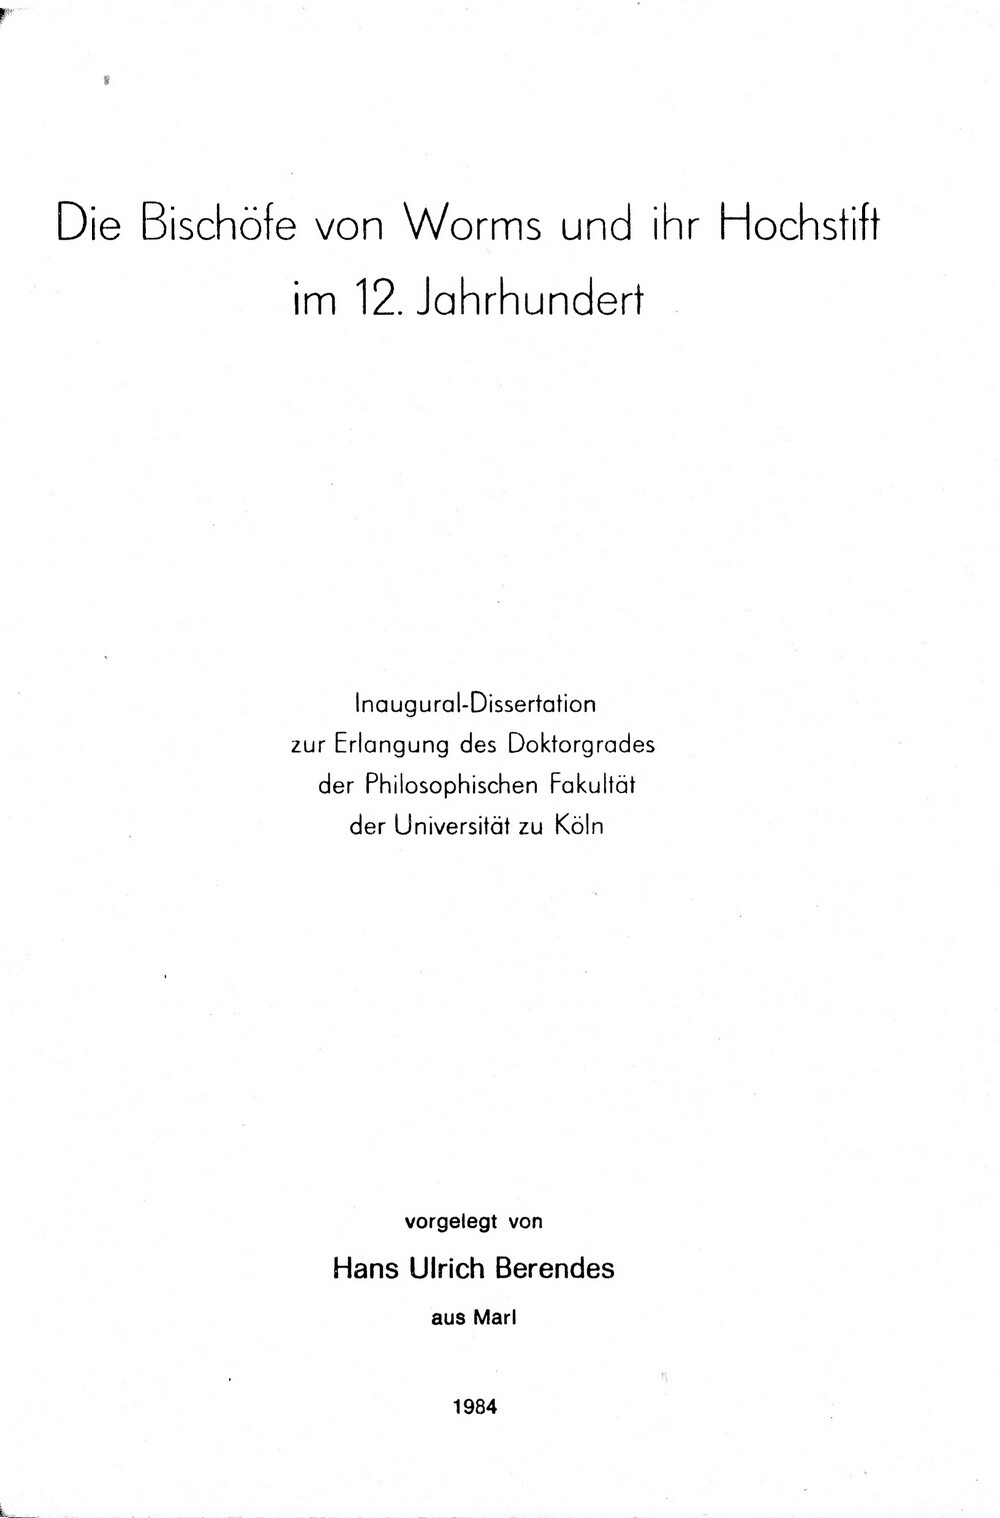 Die Bischöfe von Worms und ihr Hochstift im 12. Jahrhundert (Kulturverein Guntersblum CC BY-NC-SA)